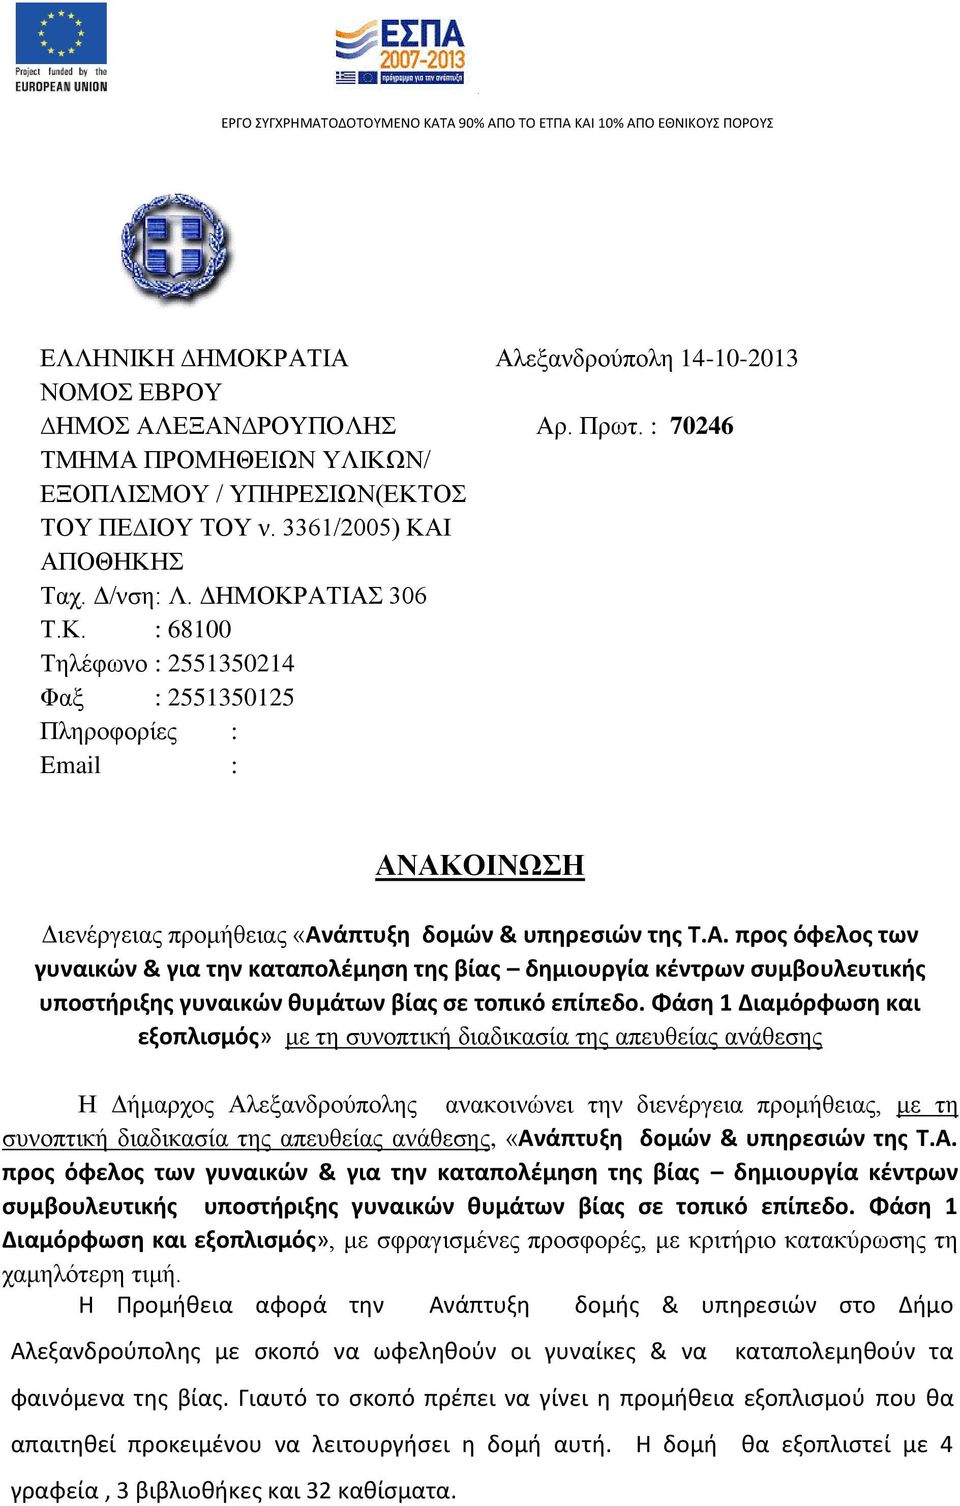 Φάση 1 Διαμόρφωση και με τη συνοπτική διαδικασία της απευθείας ανάθεσης Η Δήμαρχος Αλεξανδρούπολης ανακοινώνει την διενέργεια προμήθειας, με τη συνοπτική διαδικασία της απευθείας ανάθεσης, «Ανάπτυξη